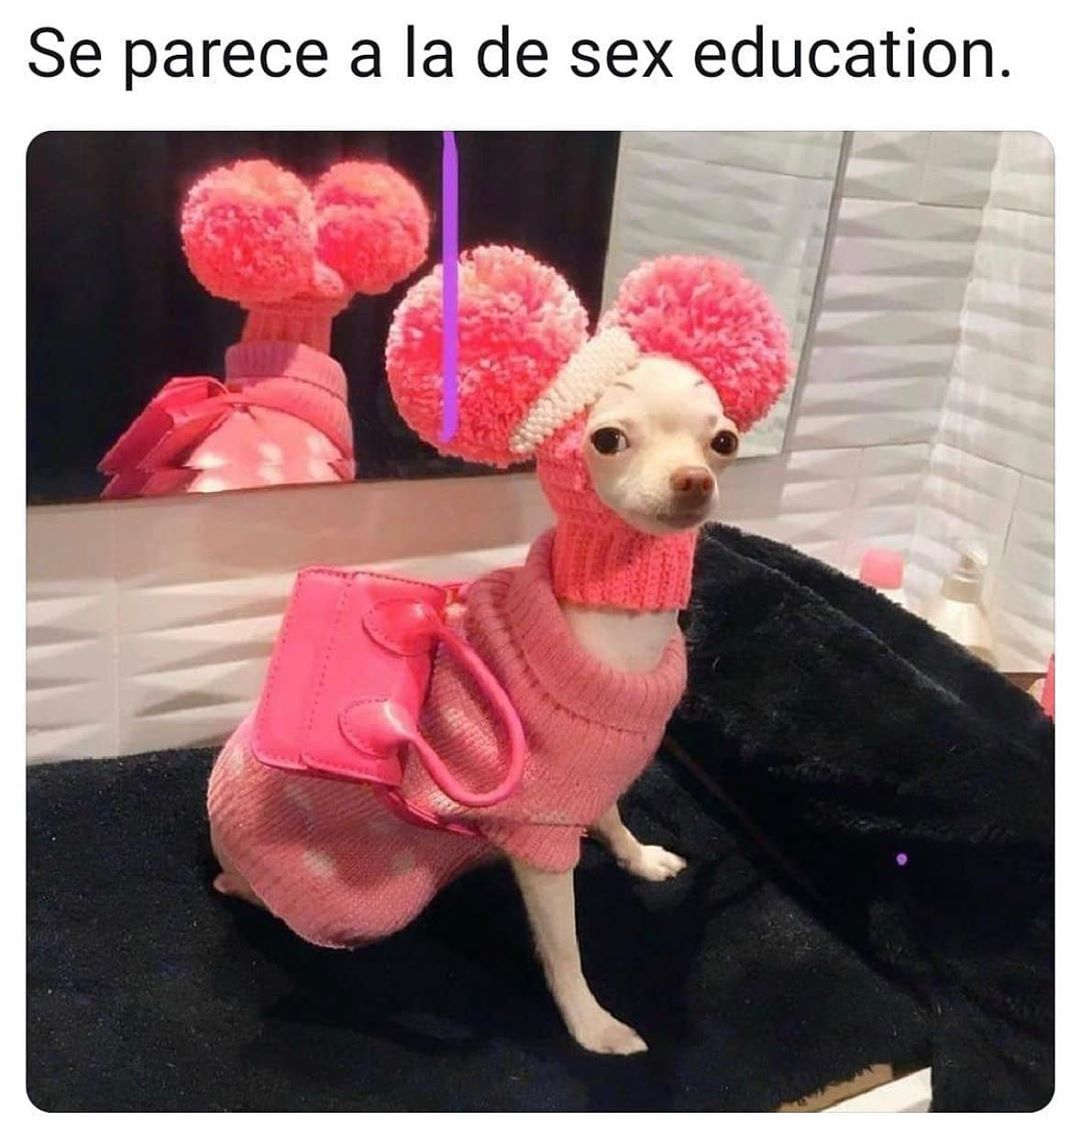 Se parece a la de sex education.